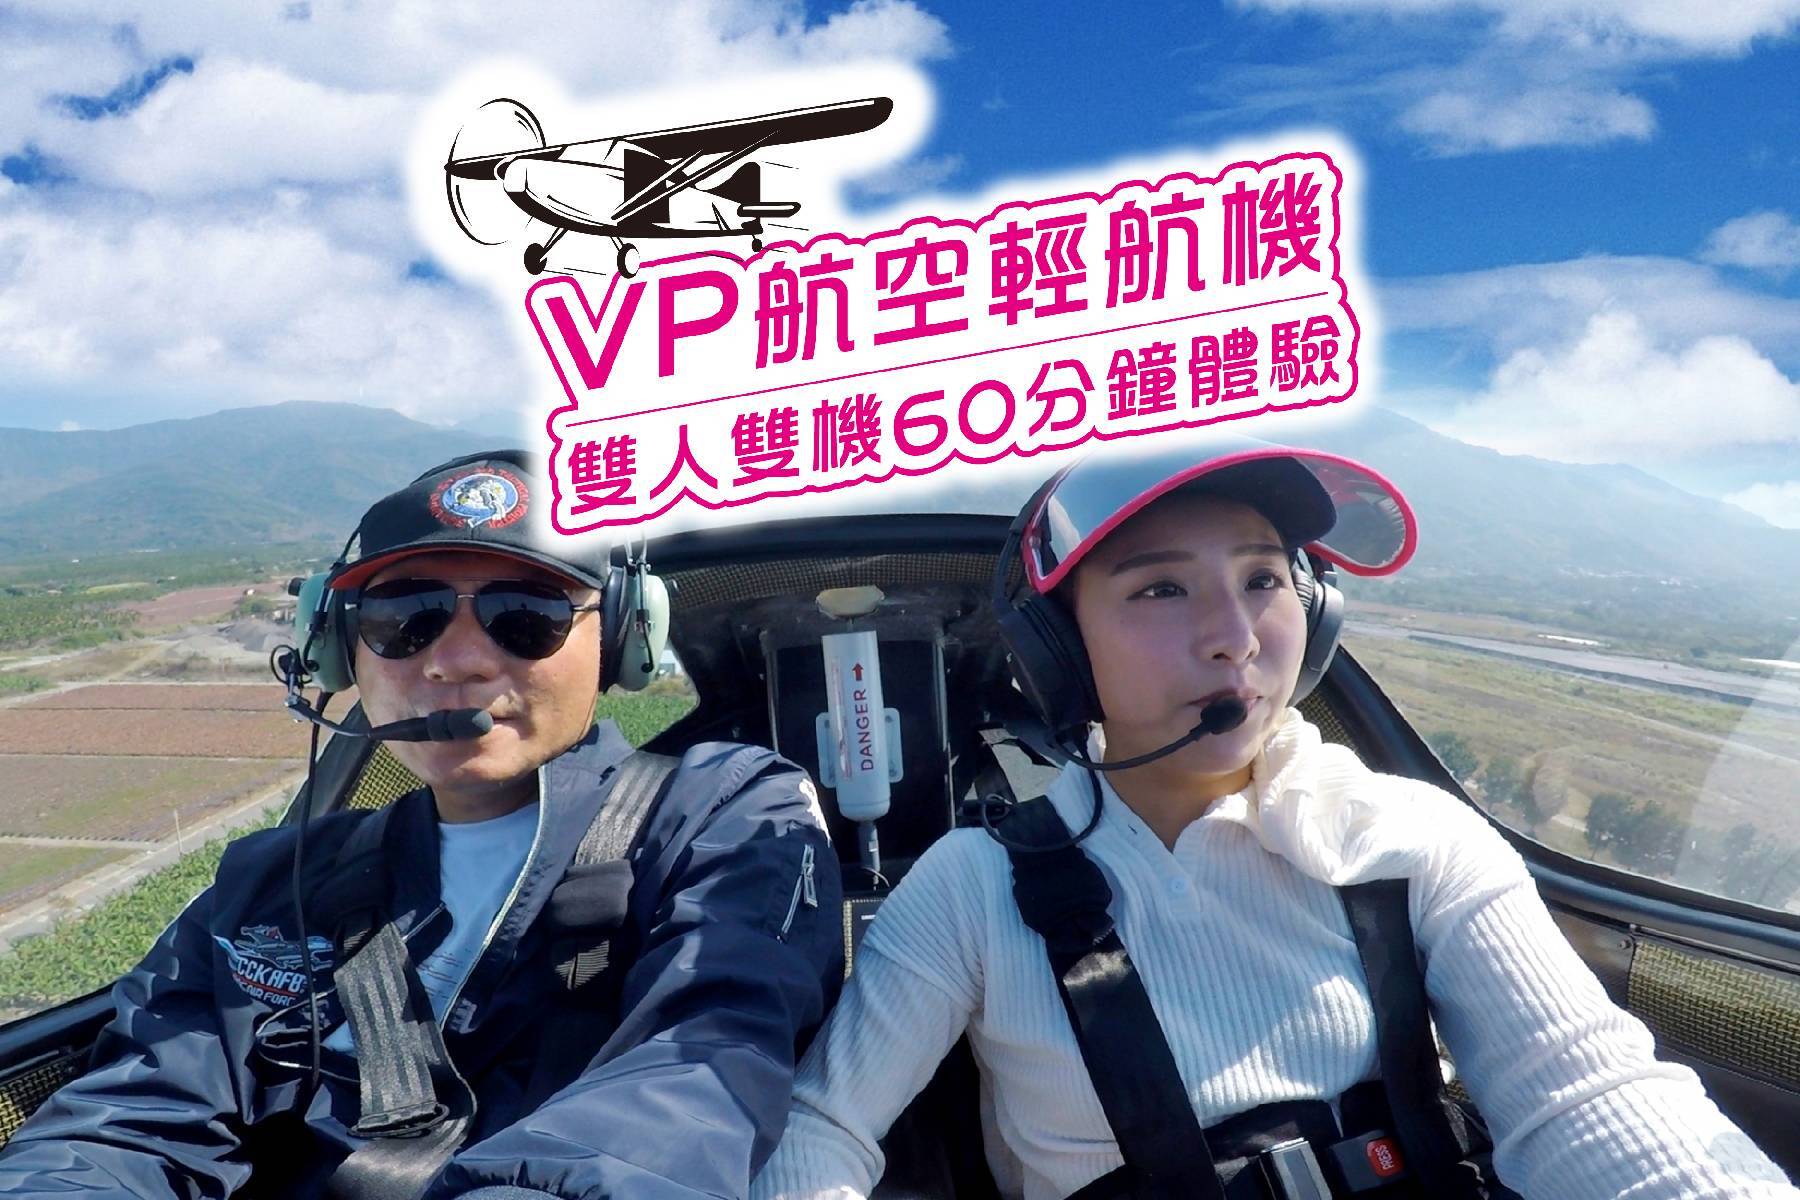 Vp航空-輕航機雙人雙機60分鐘體驗券1